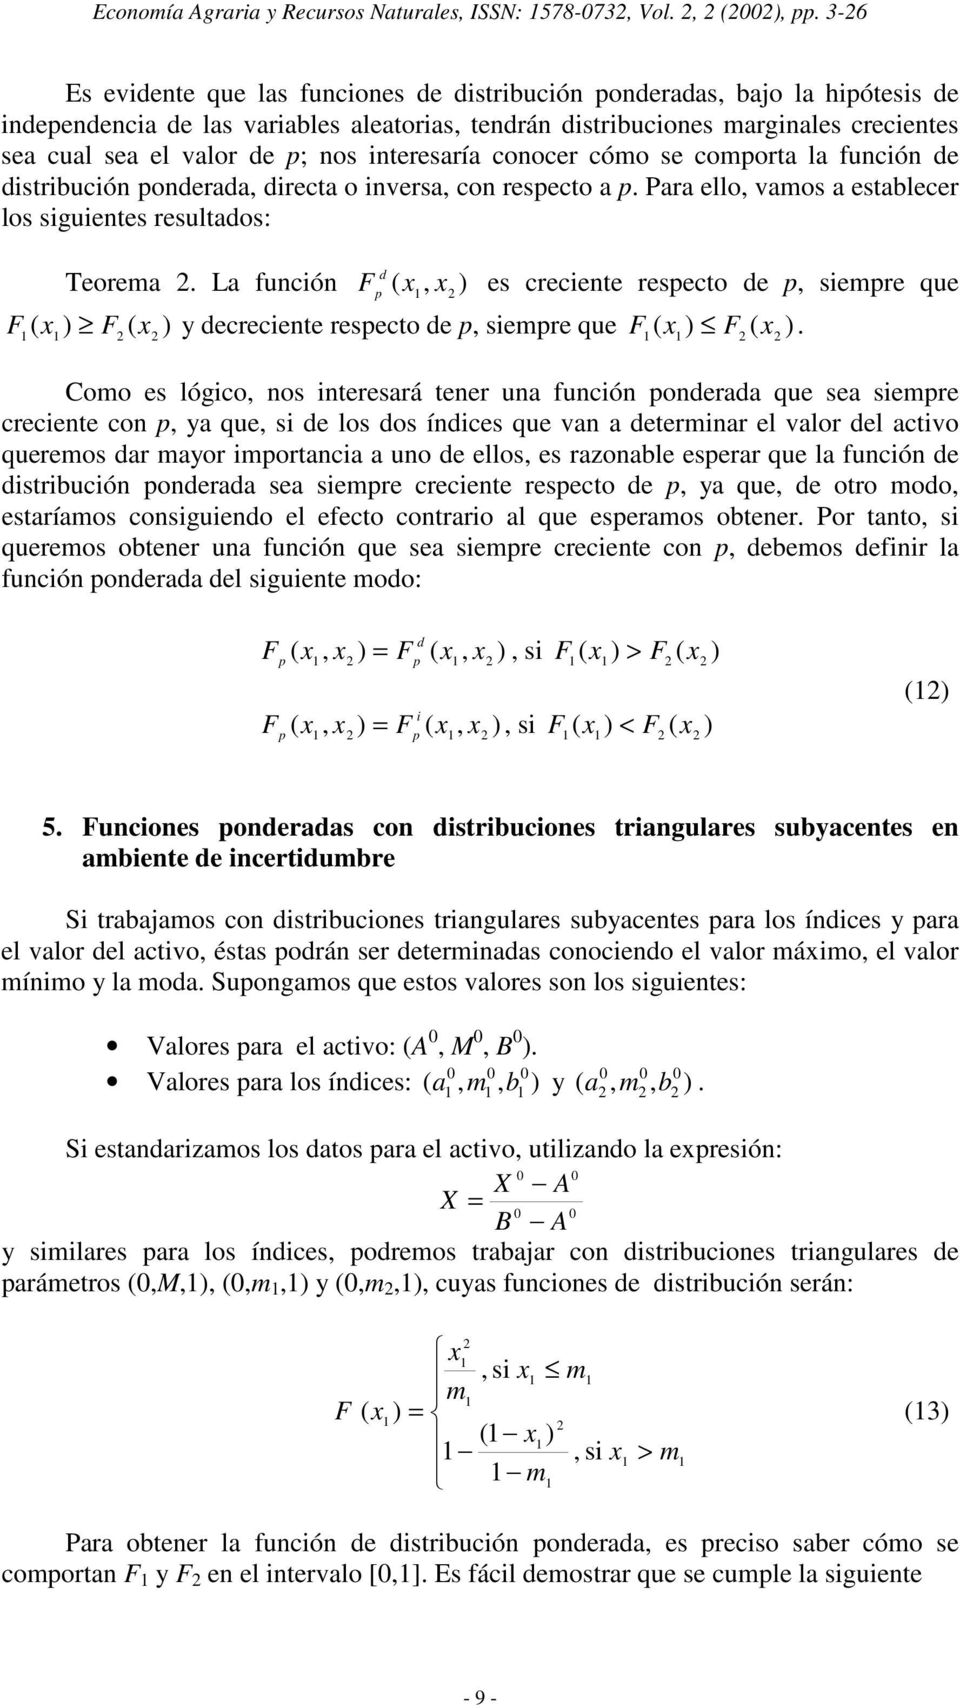 interesaría conocer cómo se comorta la función de distribución onderada directa o inversa con resecto a. Para ello vamos a establecer los siguientes resultados: Teorema.